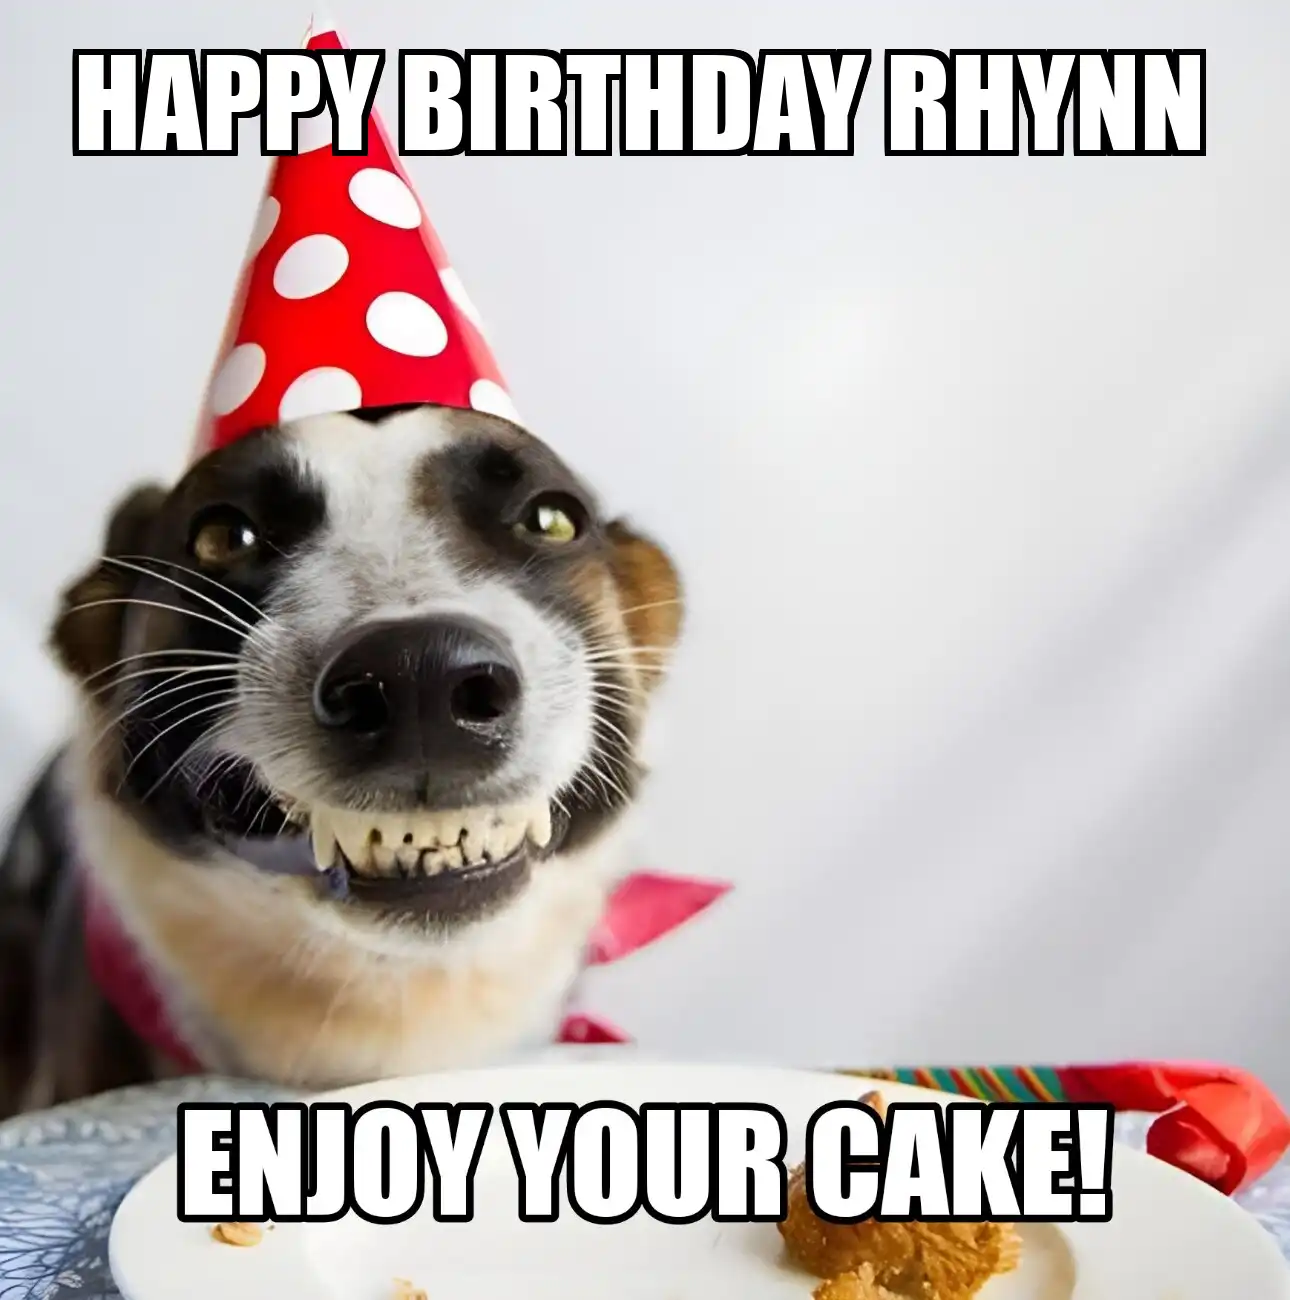 Happy Birthday Rhynn Enjoy Your Cake Dog Meme